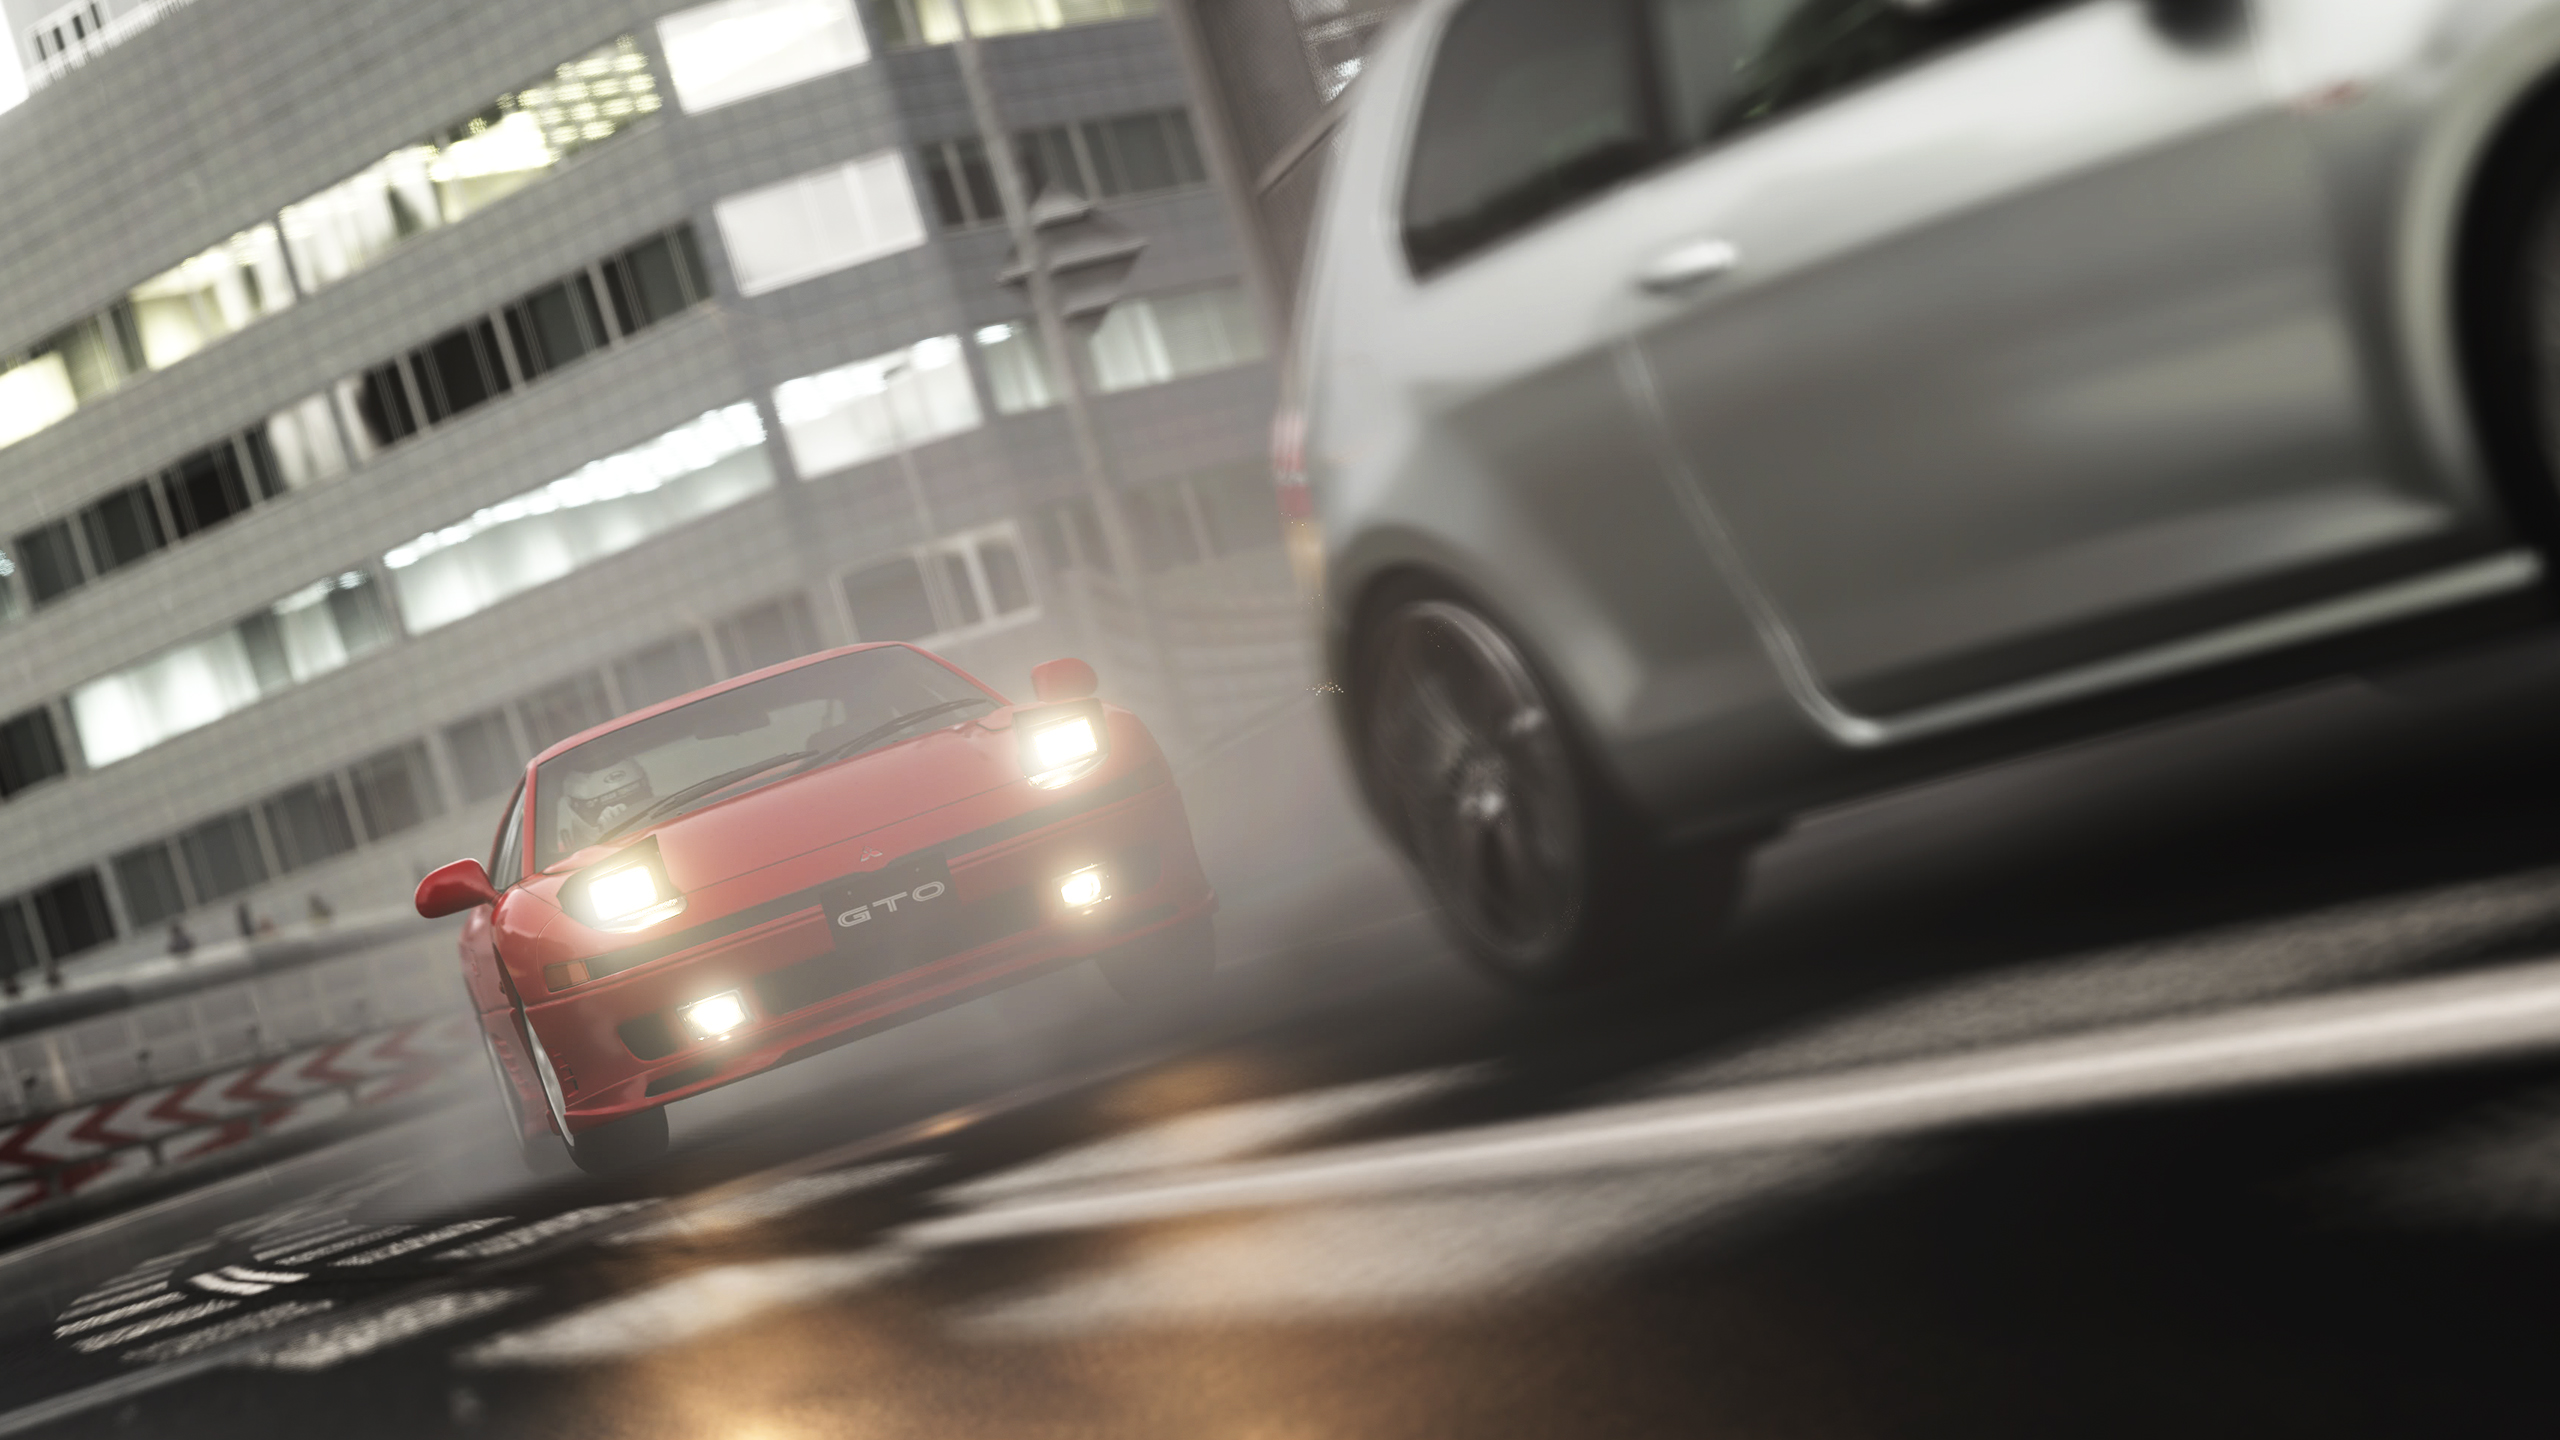 评测编辑分享《GT赛车7》大量照片模式截图 将于3月4日正式发售